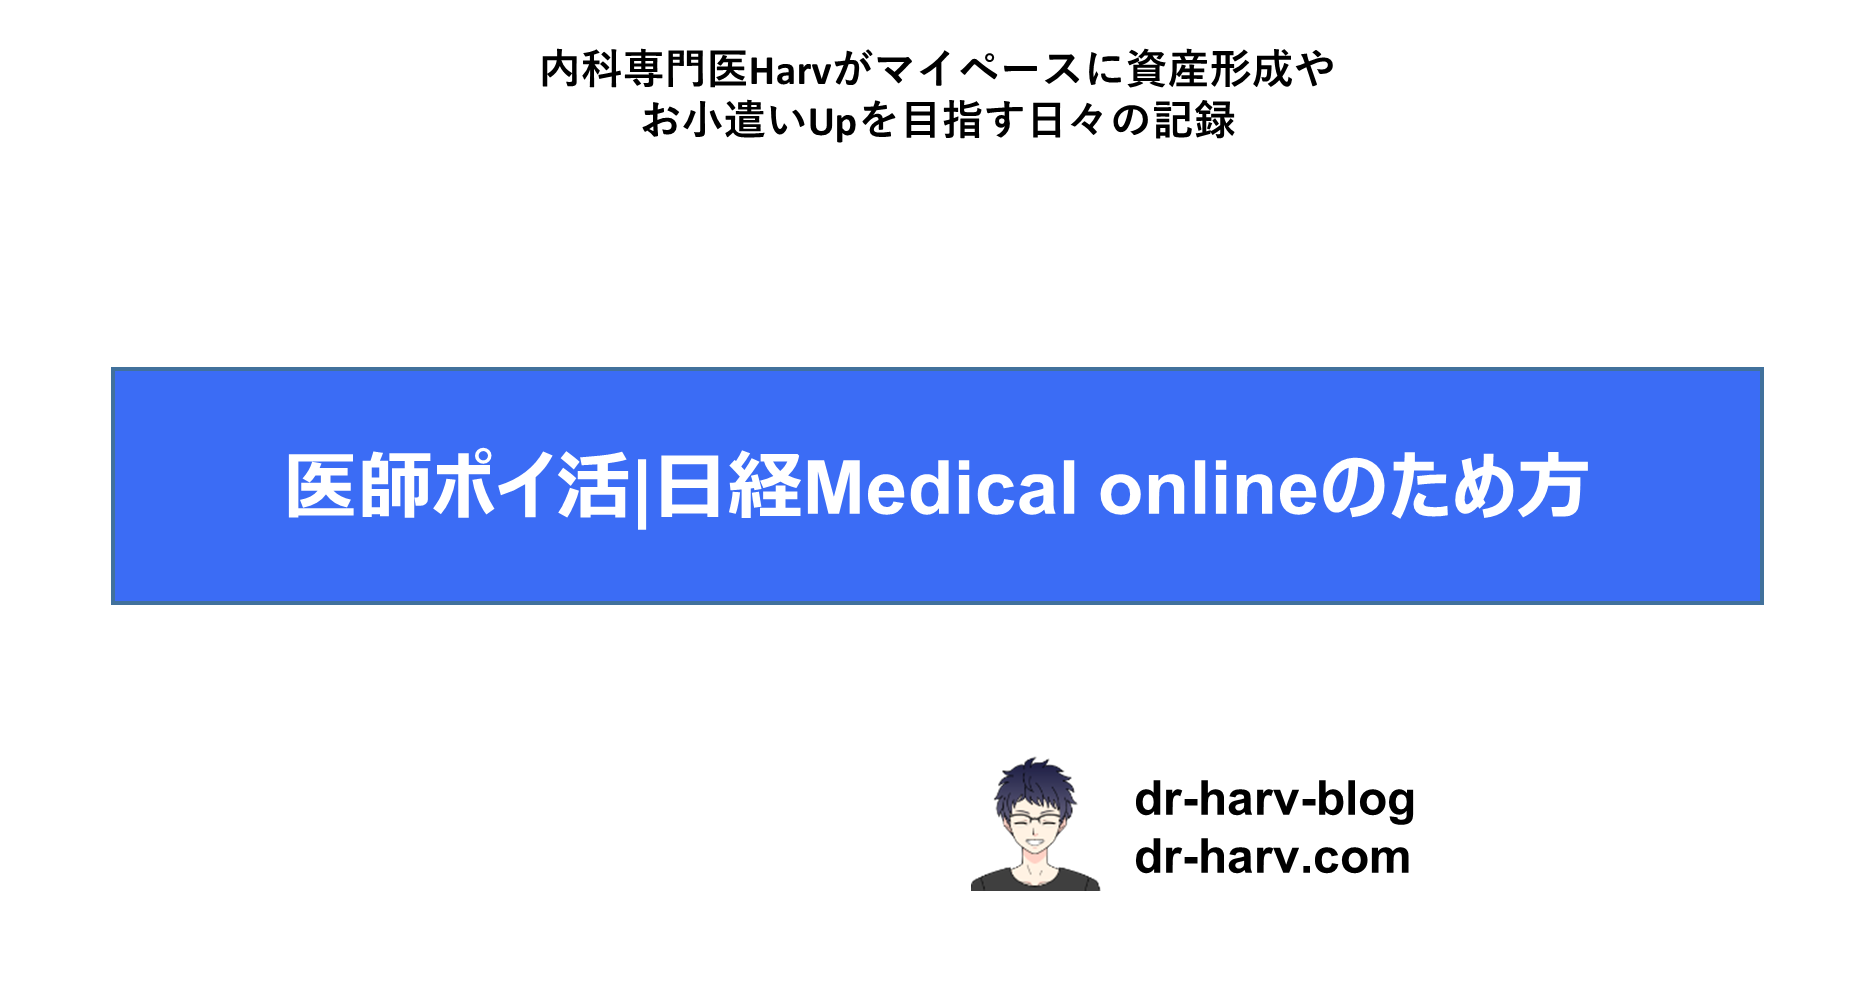 日経Medical online